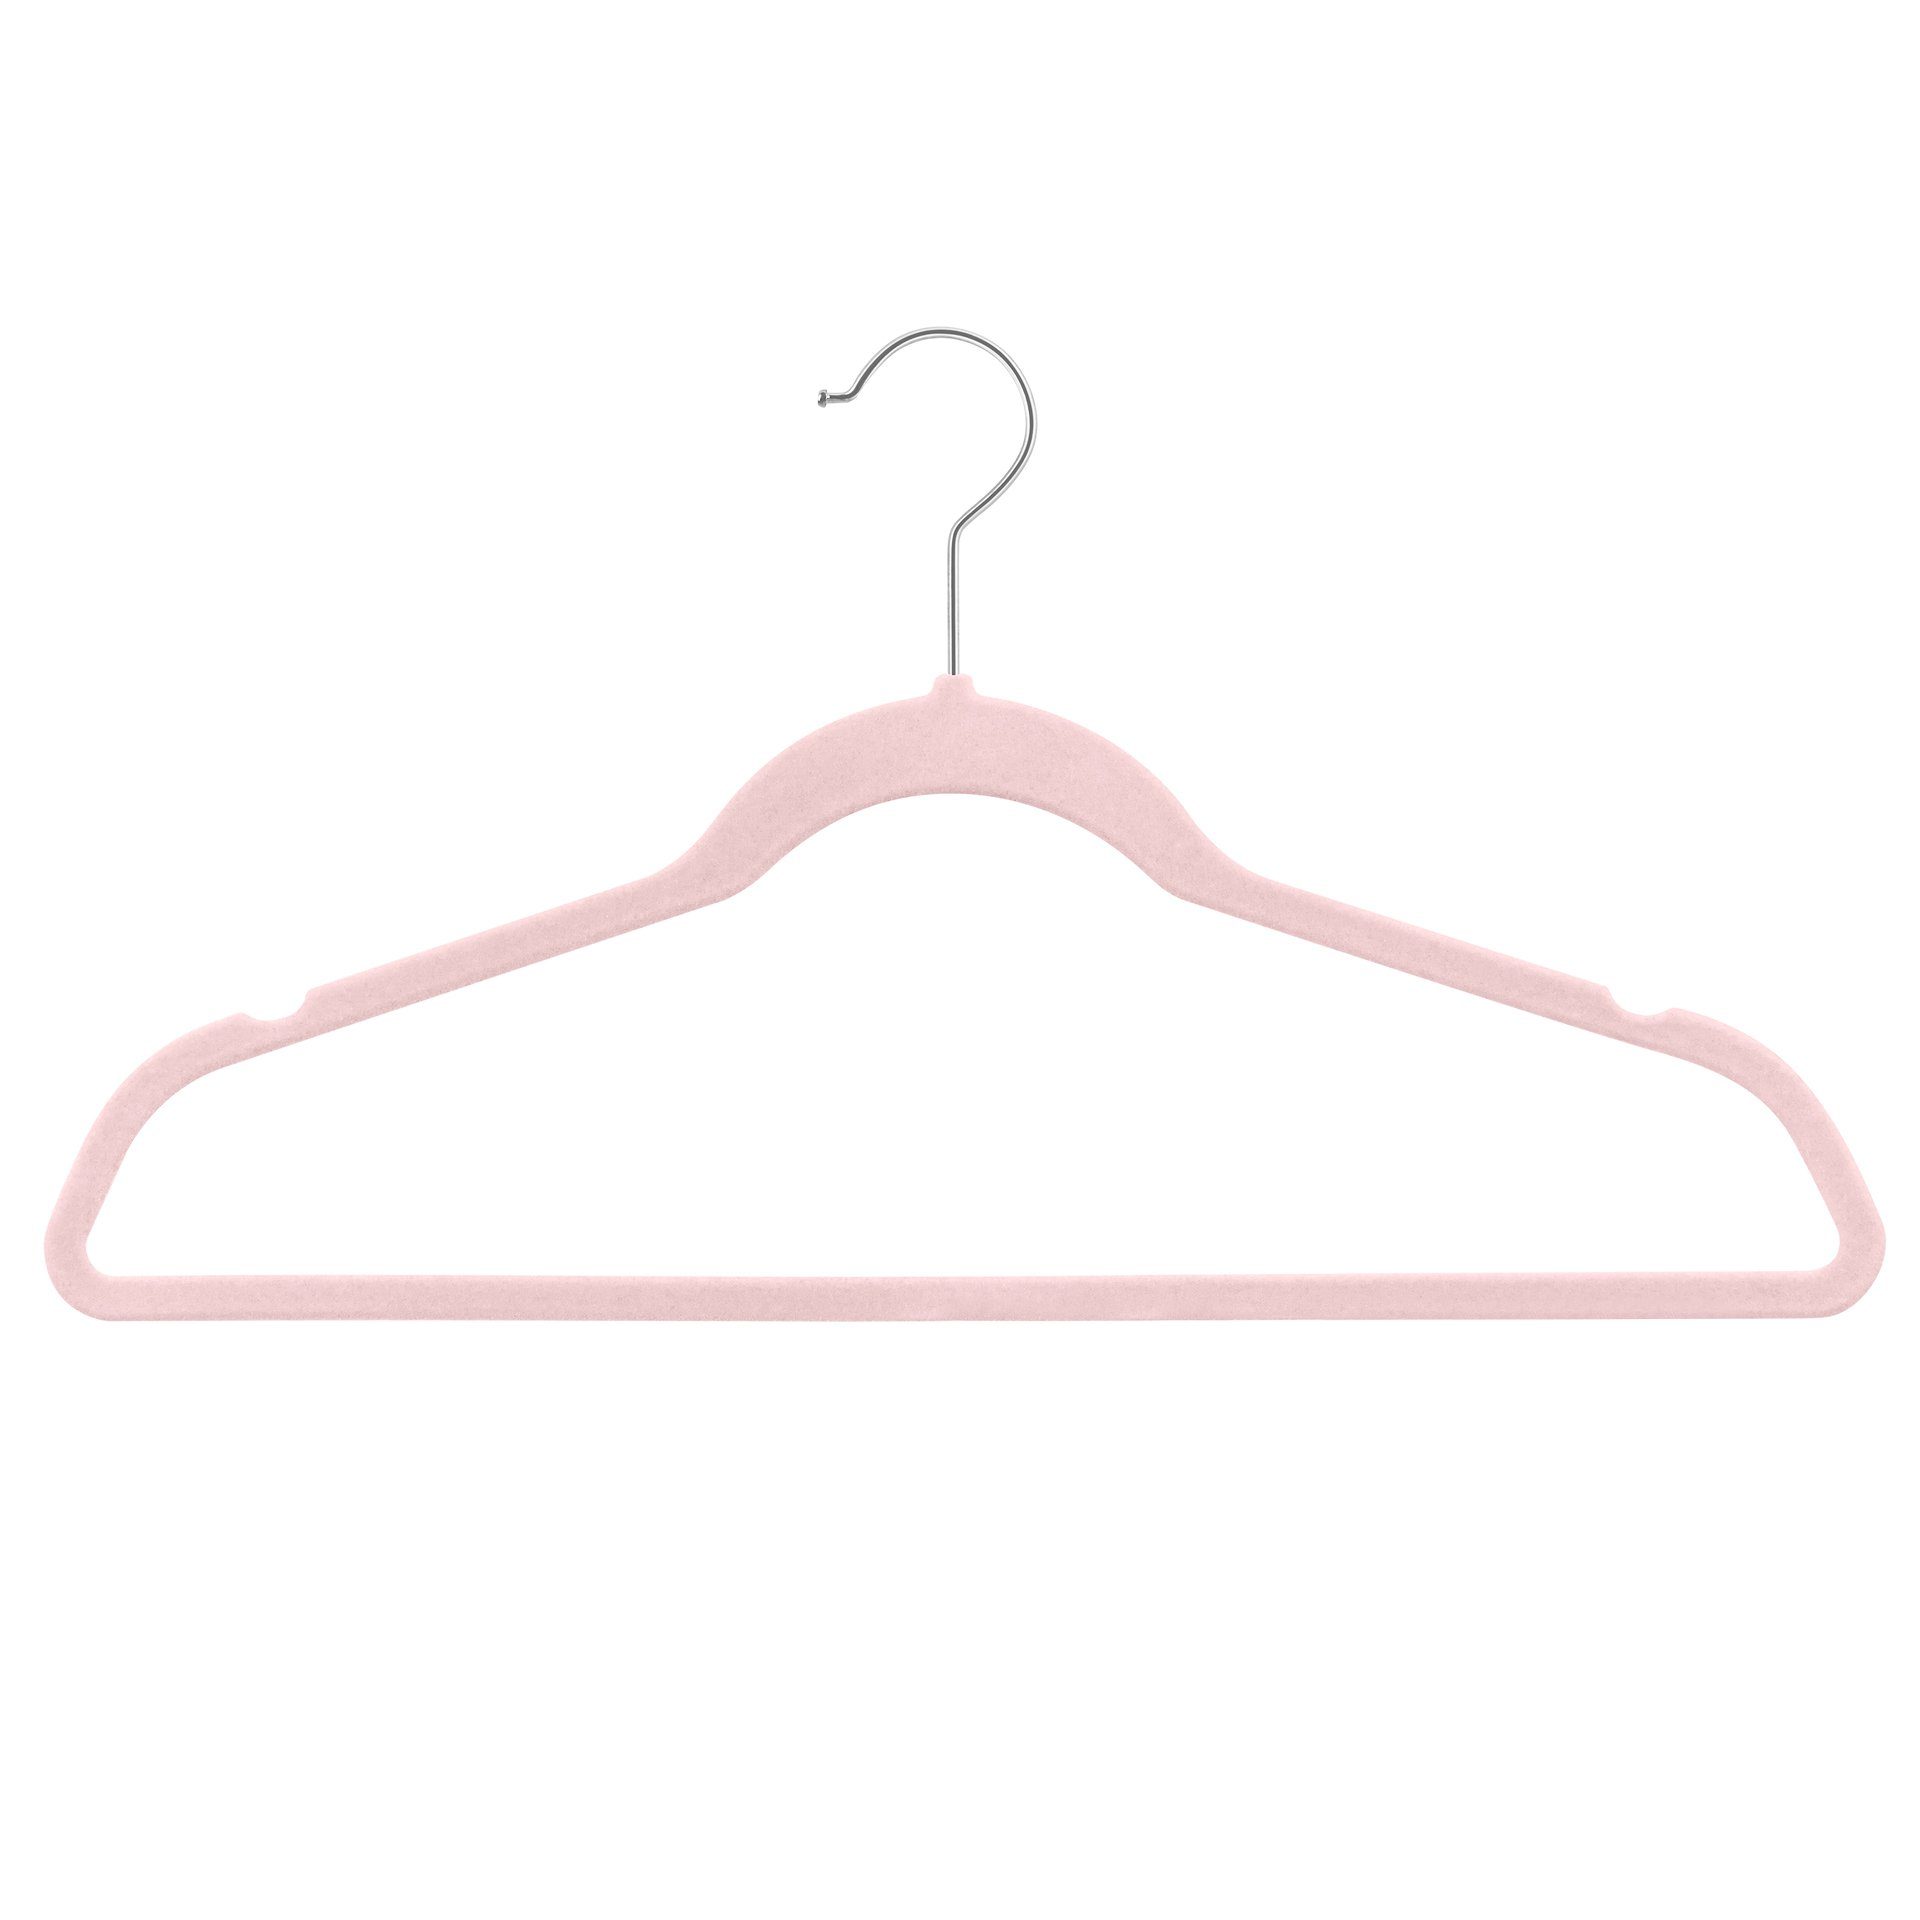 StickandShine Kleiderbügel Samt Kleiderbügel verschiedenen Farben zur Wahl mit verschiedenen Haken Farben (Gold, Schwarz, Rosegold, Zink Silber, Weiß) moderne luxus Bügel Rosa | Kleiderbügel